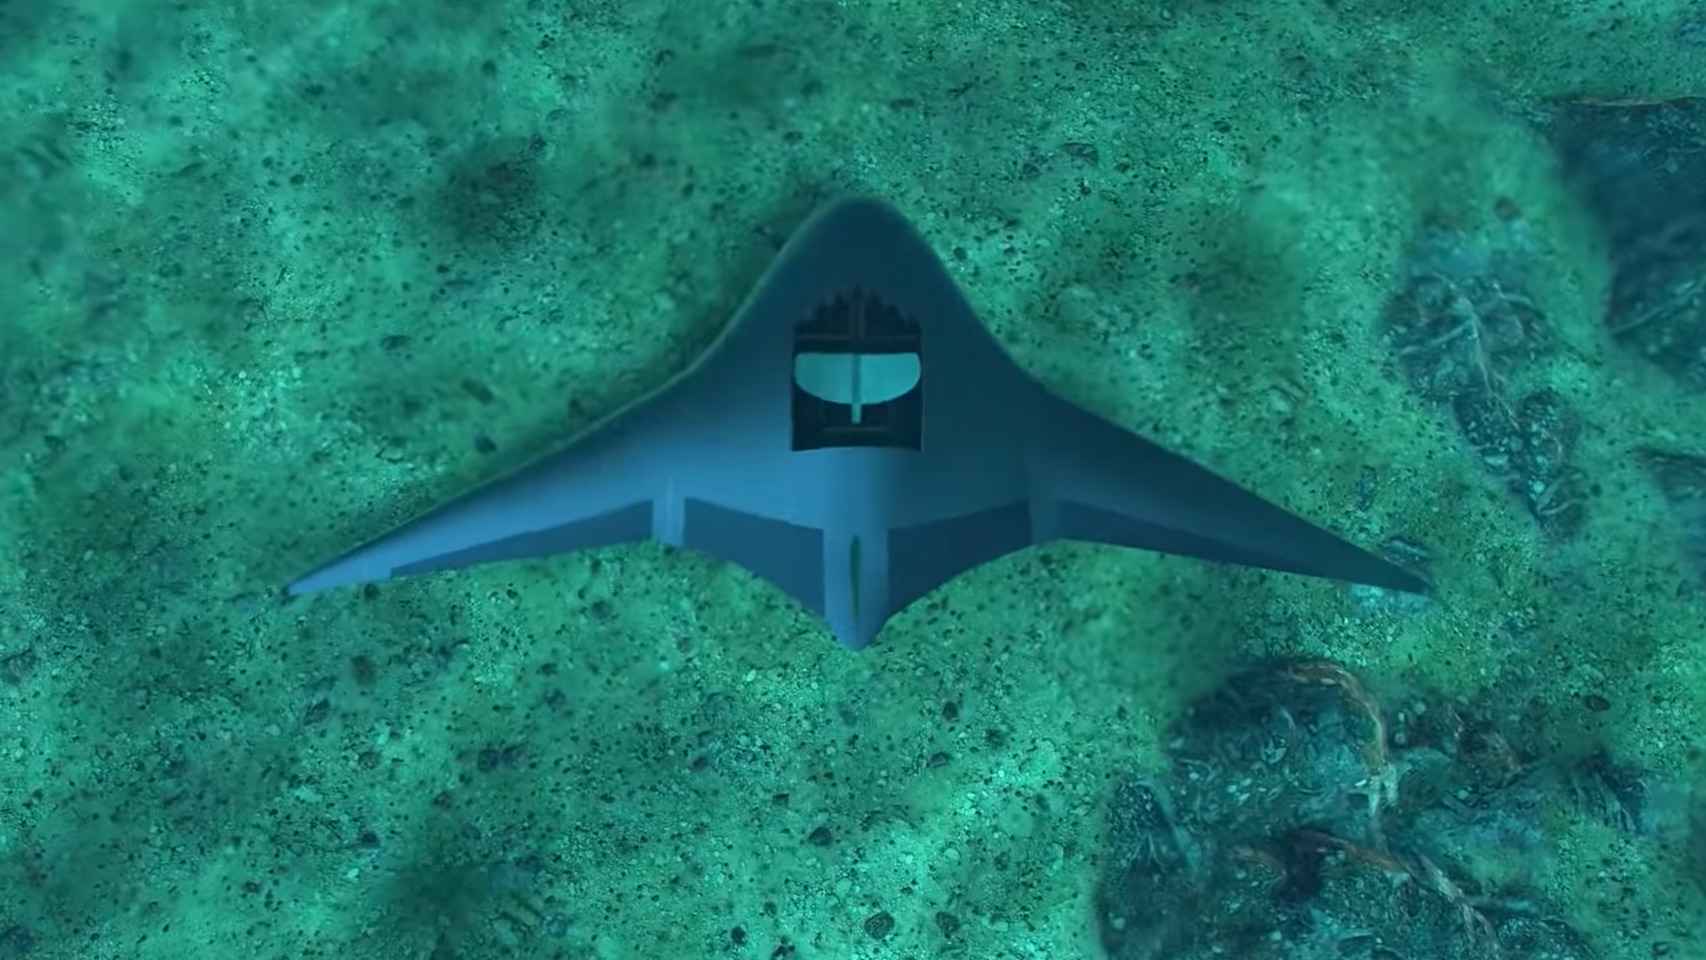 el dron mantarraya por fin se deja ver: así es el nuevo submarino gigante de eeuu que espía durante semanas